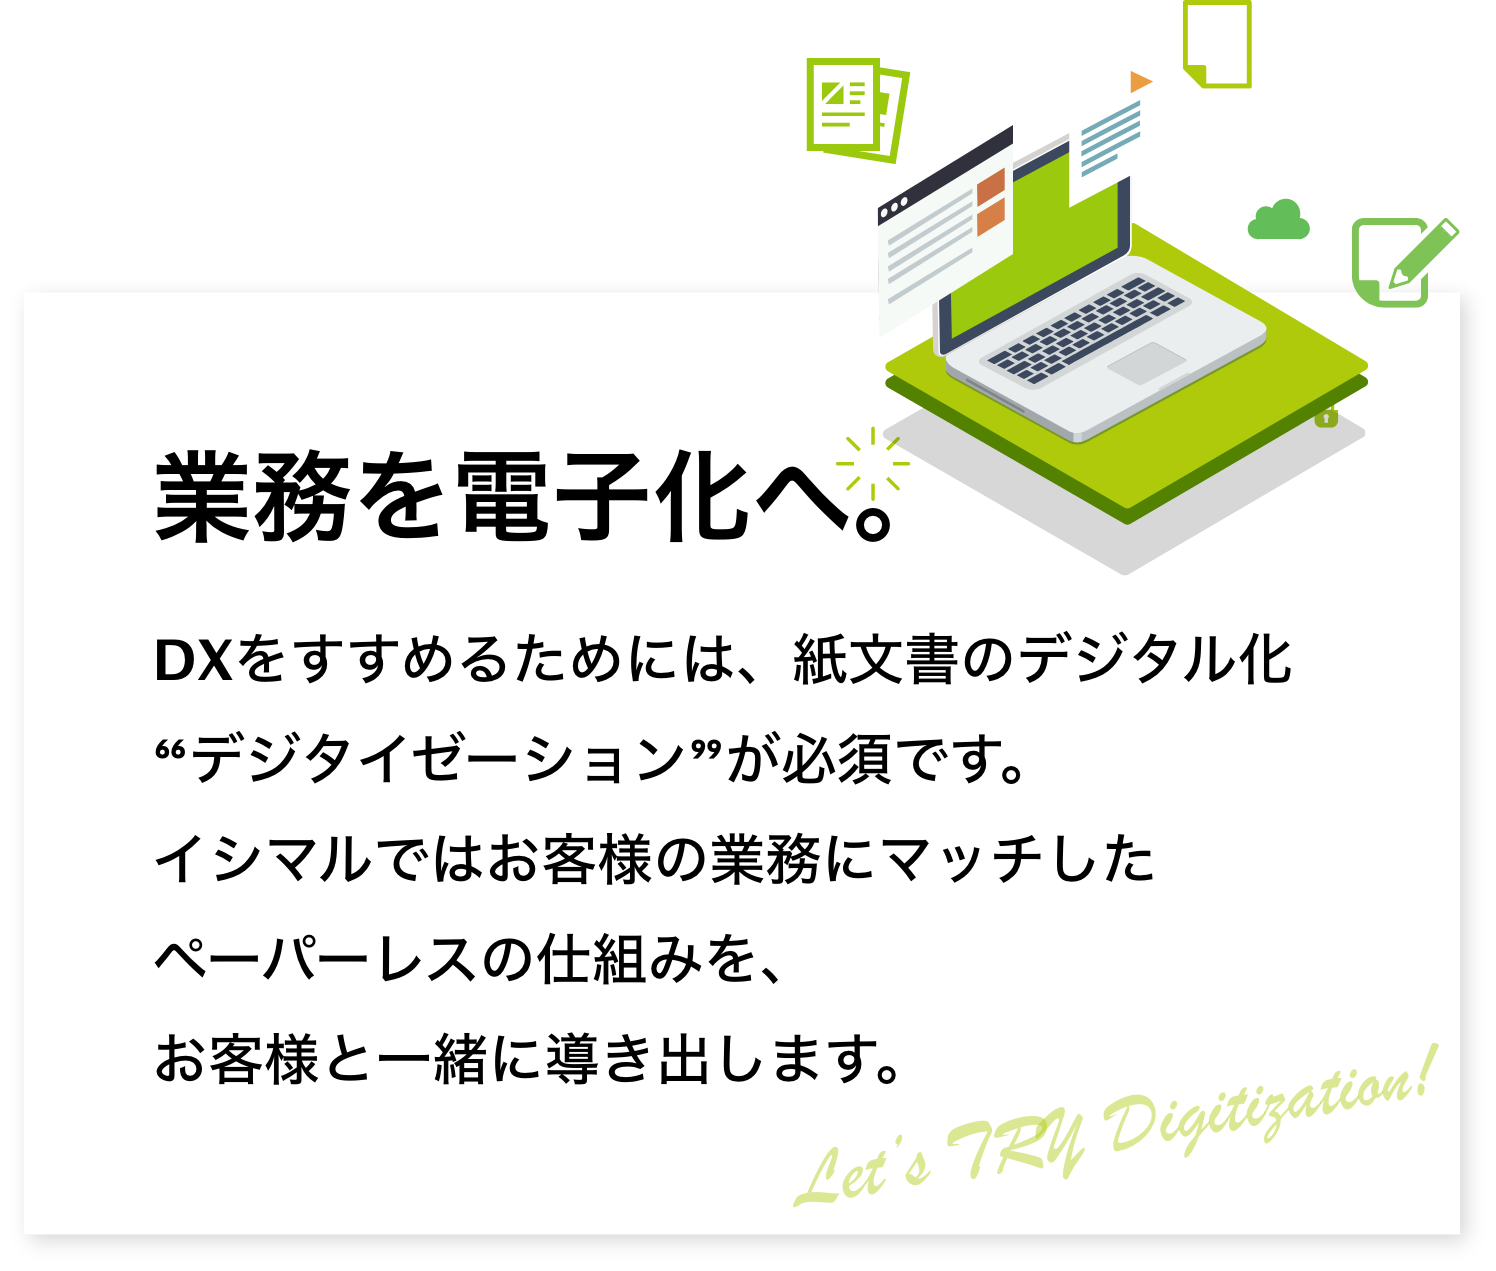 業務を電子化へ。DXをすすめるためには、紙文書のデジタル化“デジタイゼーション”が必須です。イシマルではお客様の業務にマッチしたペーパーレスの仕組みを、お客様と一緒に導き出します。